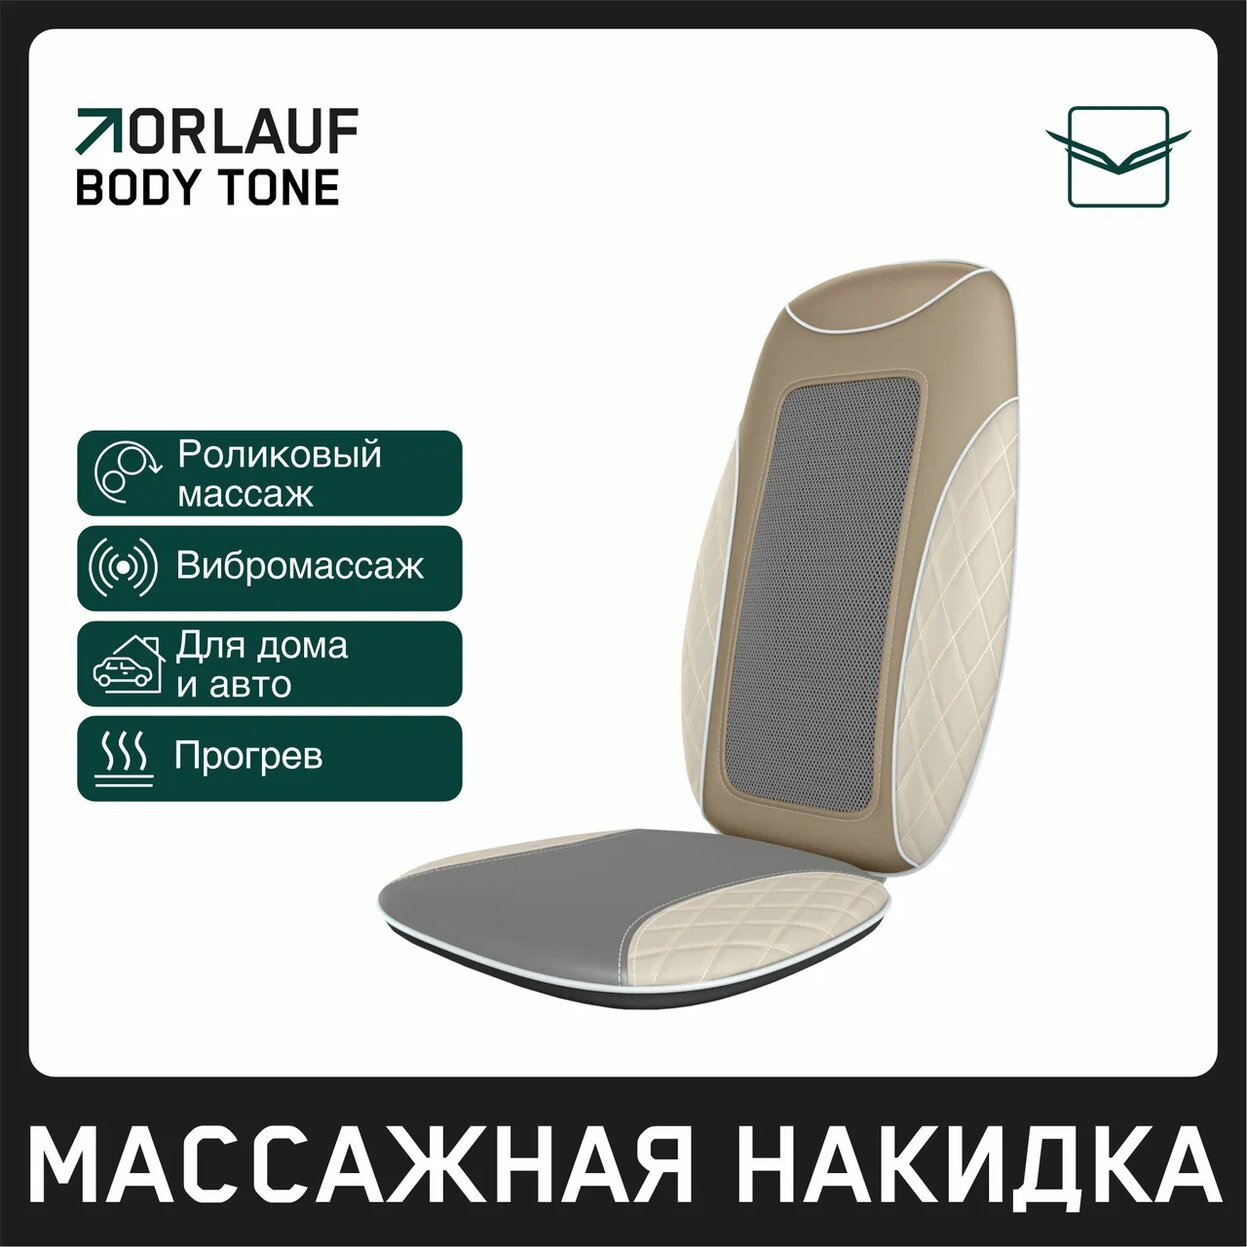 Orlauf Body Tone из каталога массажных накидок в Москве по цене 15400 ₽